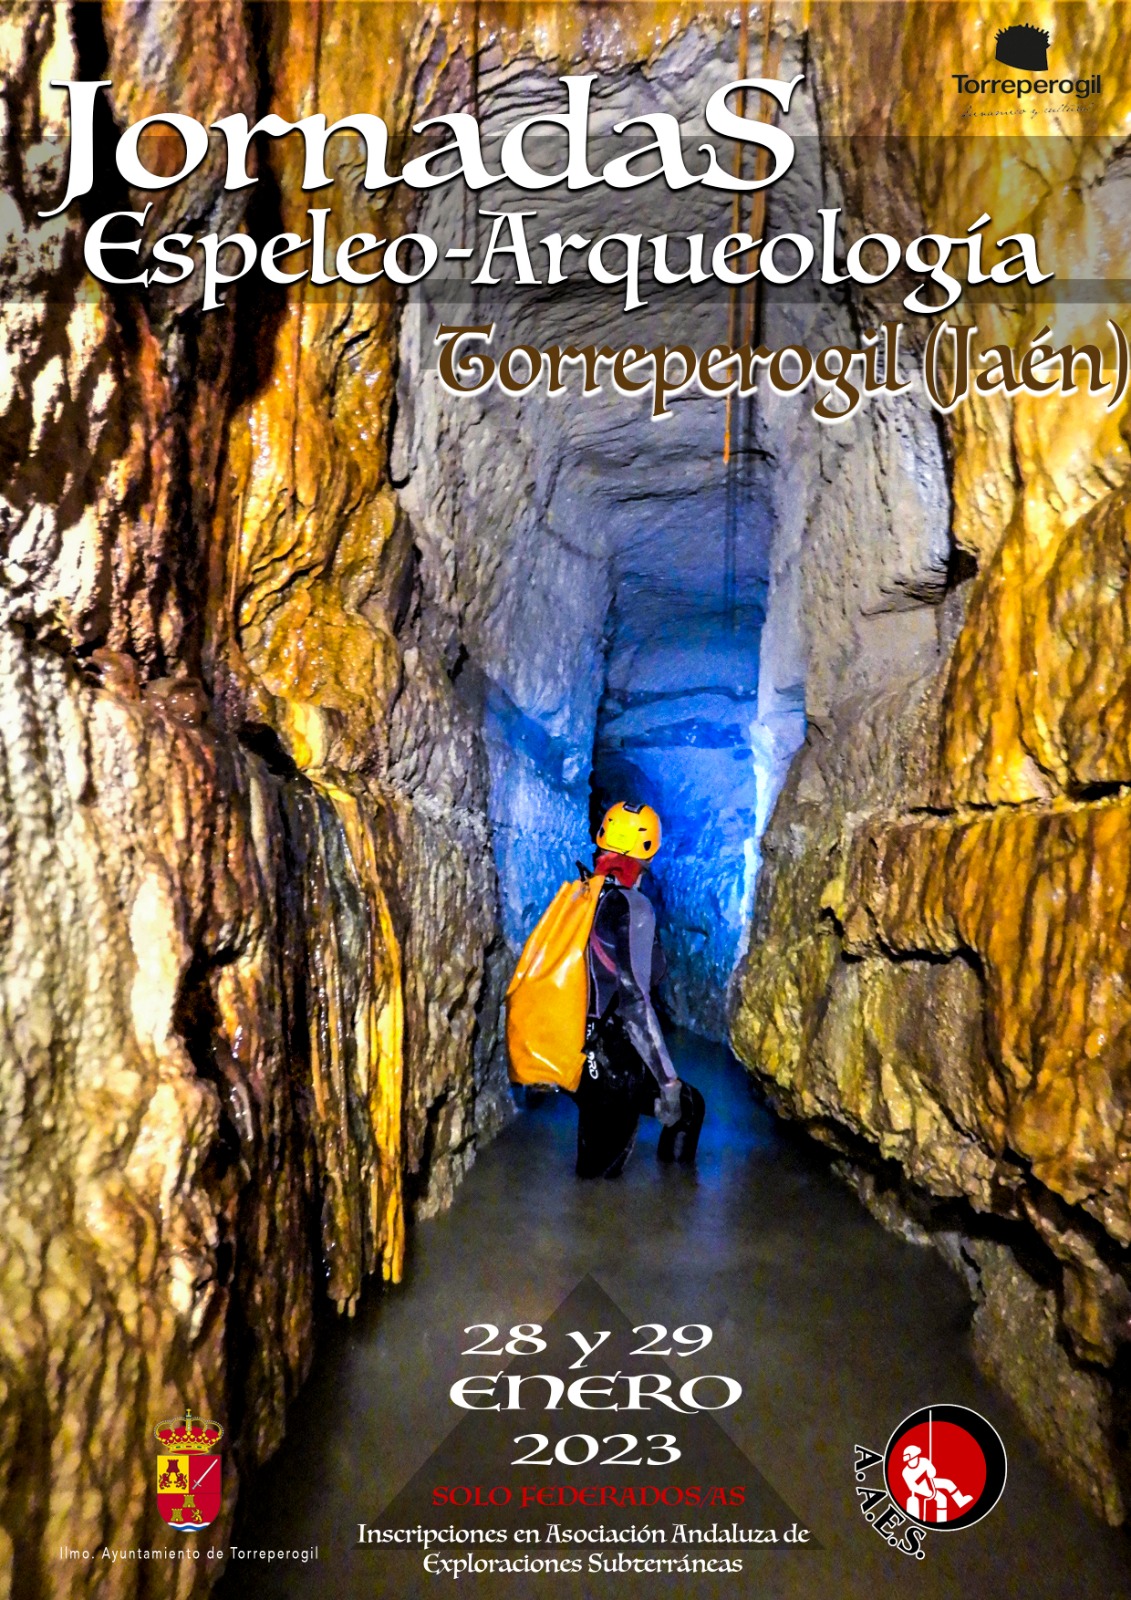 Jornadas de Espeleo-Arqueología de Torreperogil